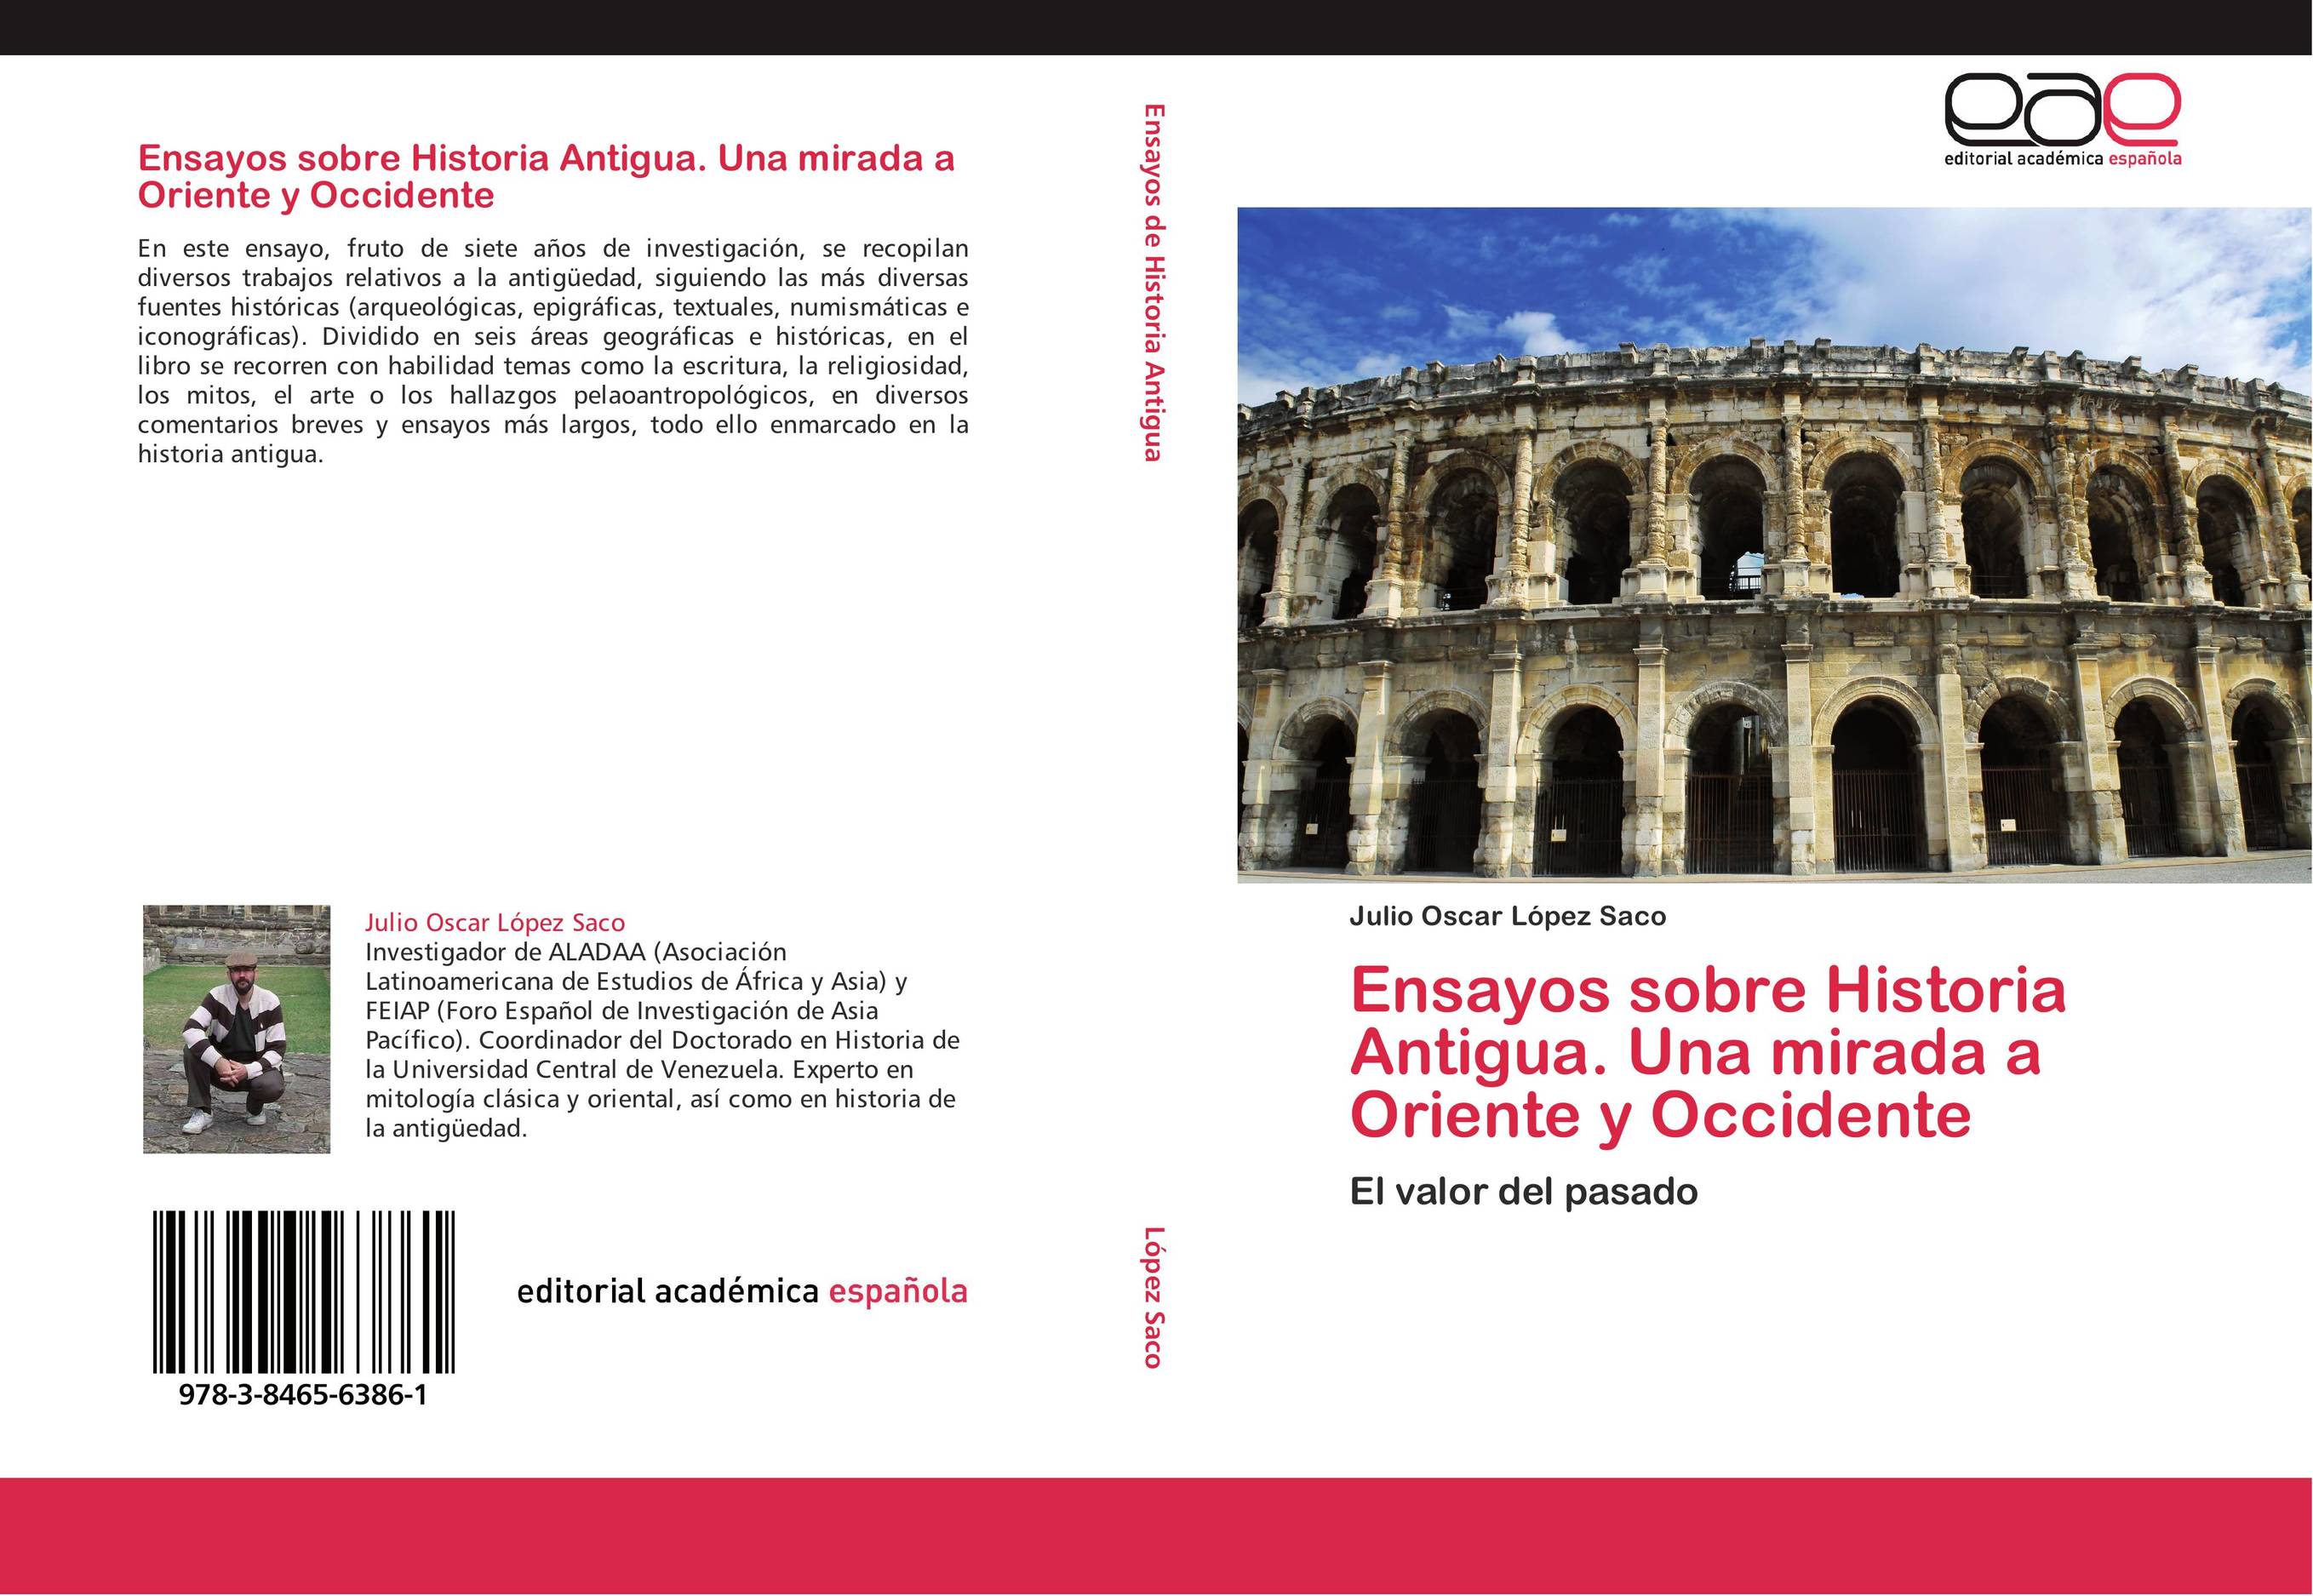 Ensayos sobre Historia Antigua. Una mirada a Oriente y Occidente